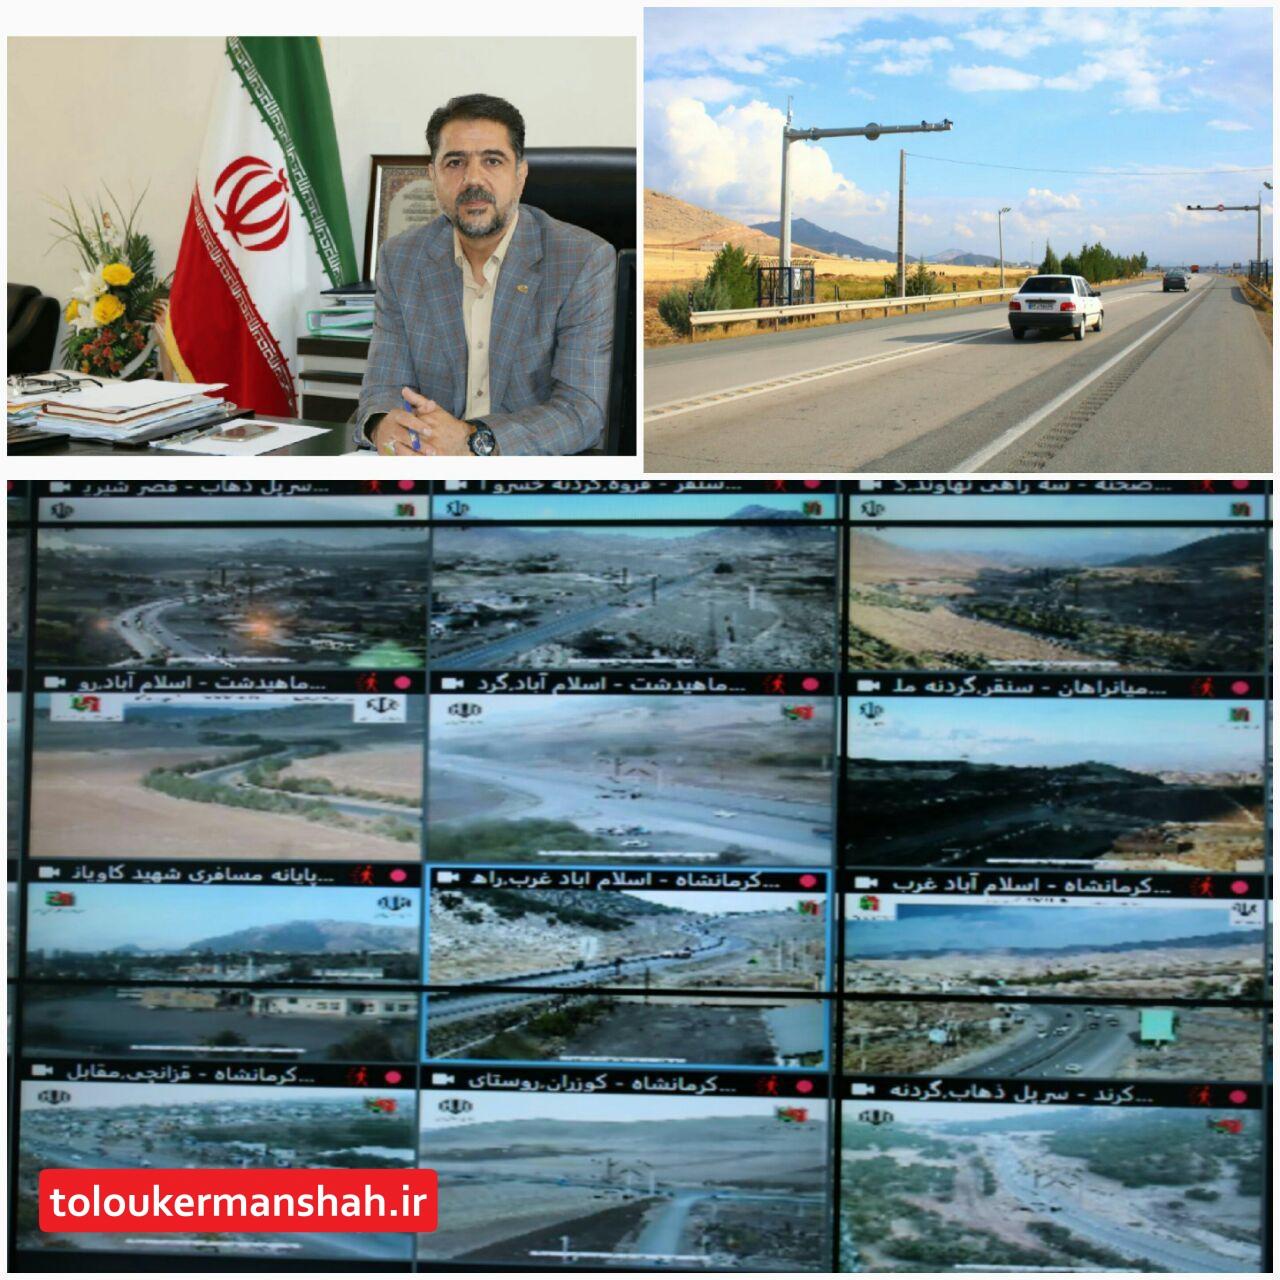 نصب ۲۵ سامانه جدید ثبت تخلفات عبور و مرور در سطح مسیرهای مواصلاتی استان کرمانشاه